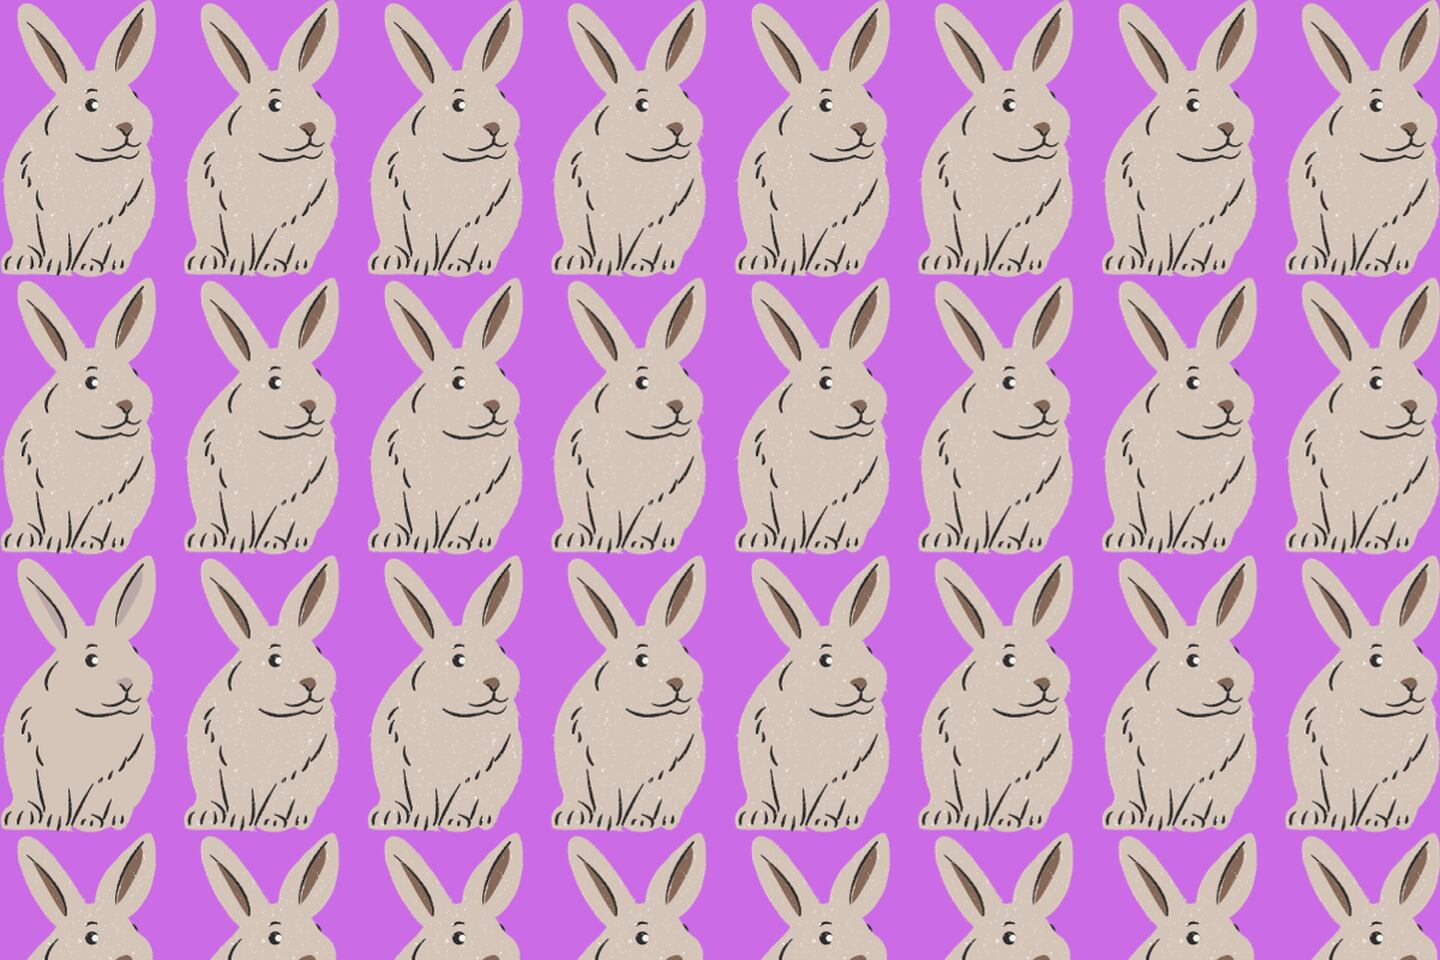 En este test visual hay muchos conejos iguales, sin embargo, uno tiene un detalle de otro color.